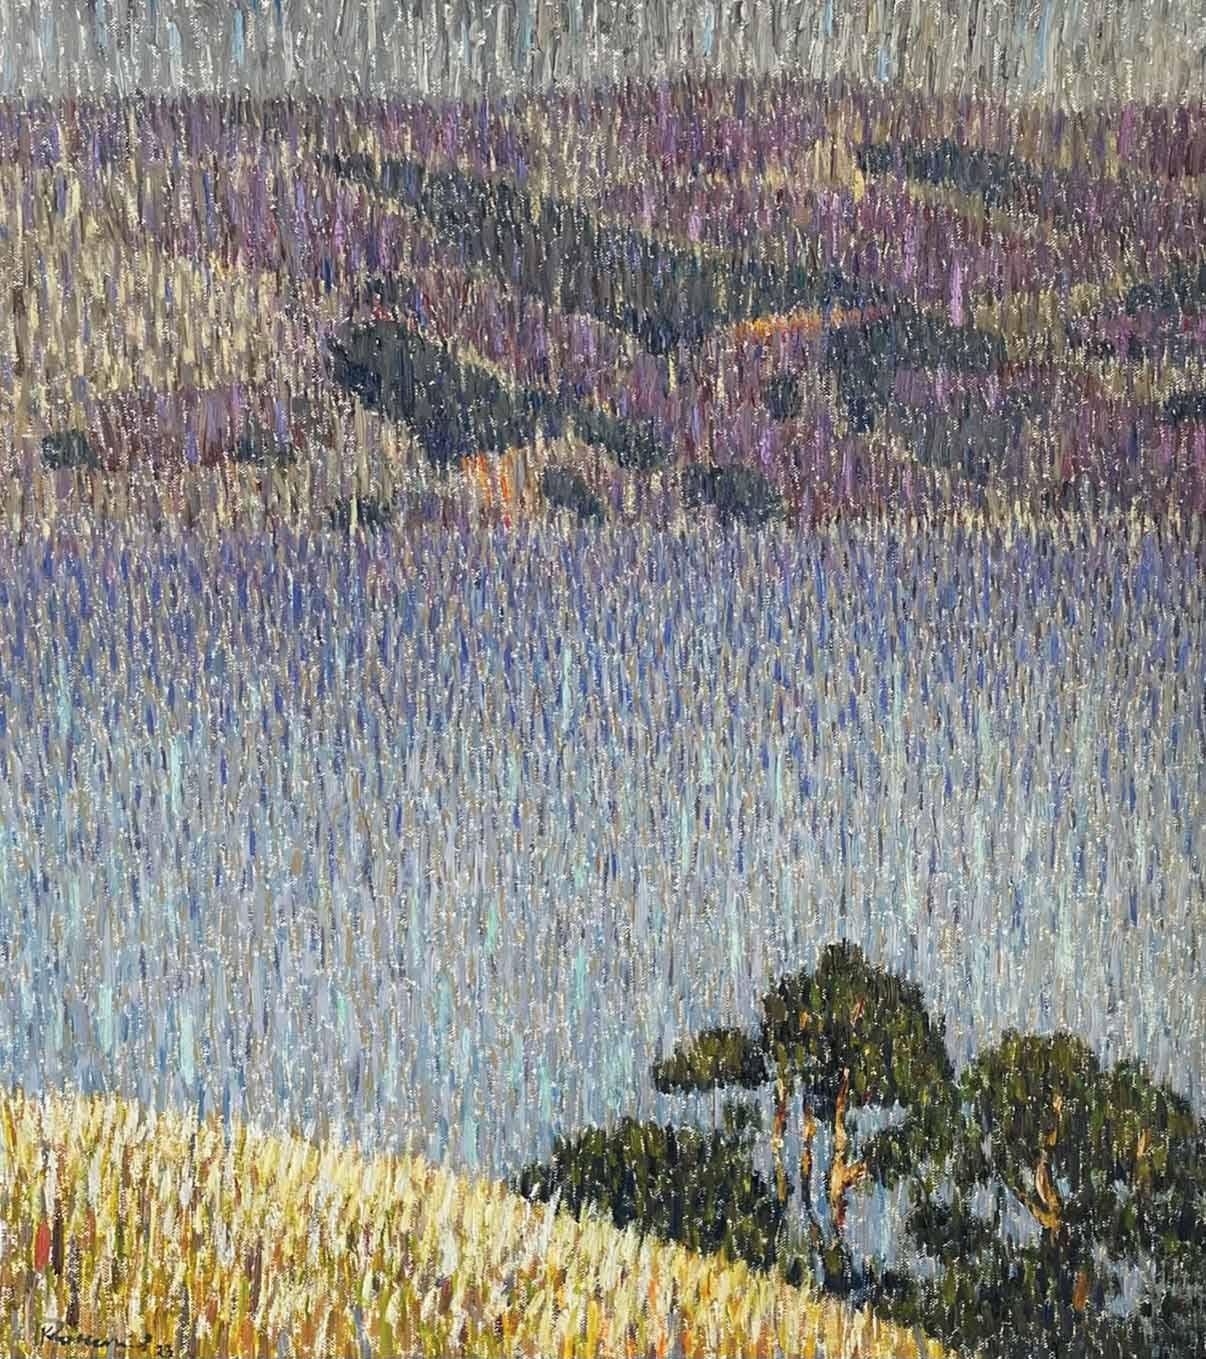 Roman Konstantinov Landscape Painting - Loch Lomond